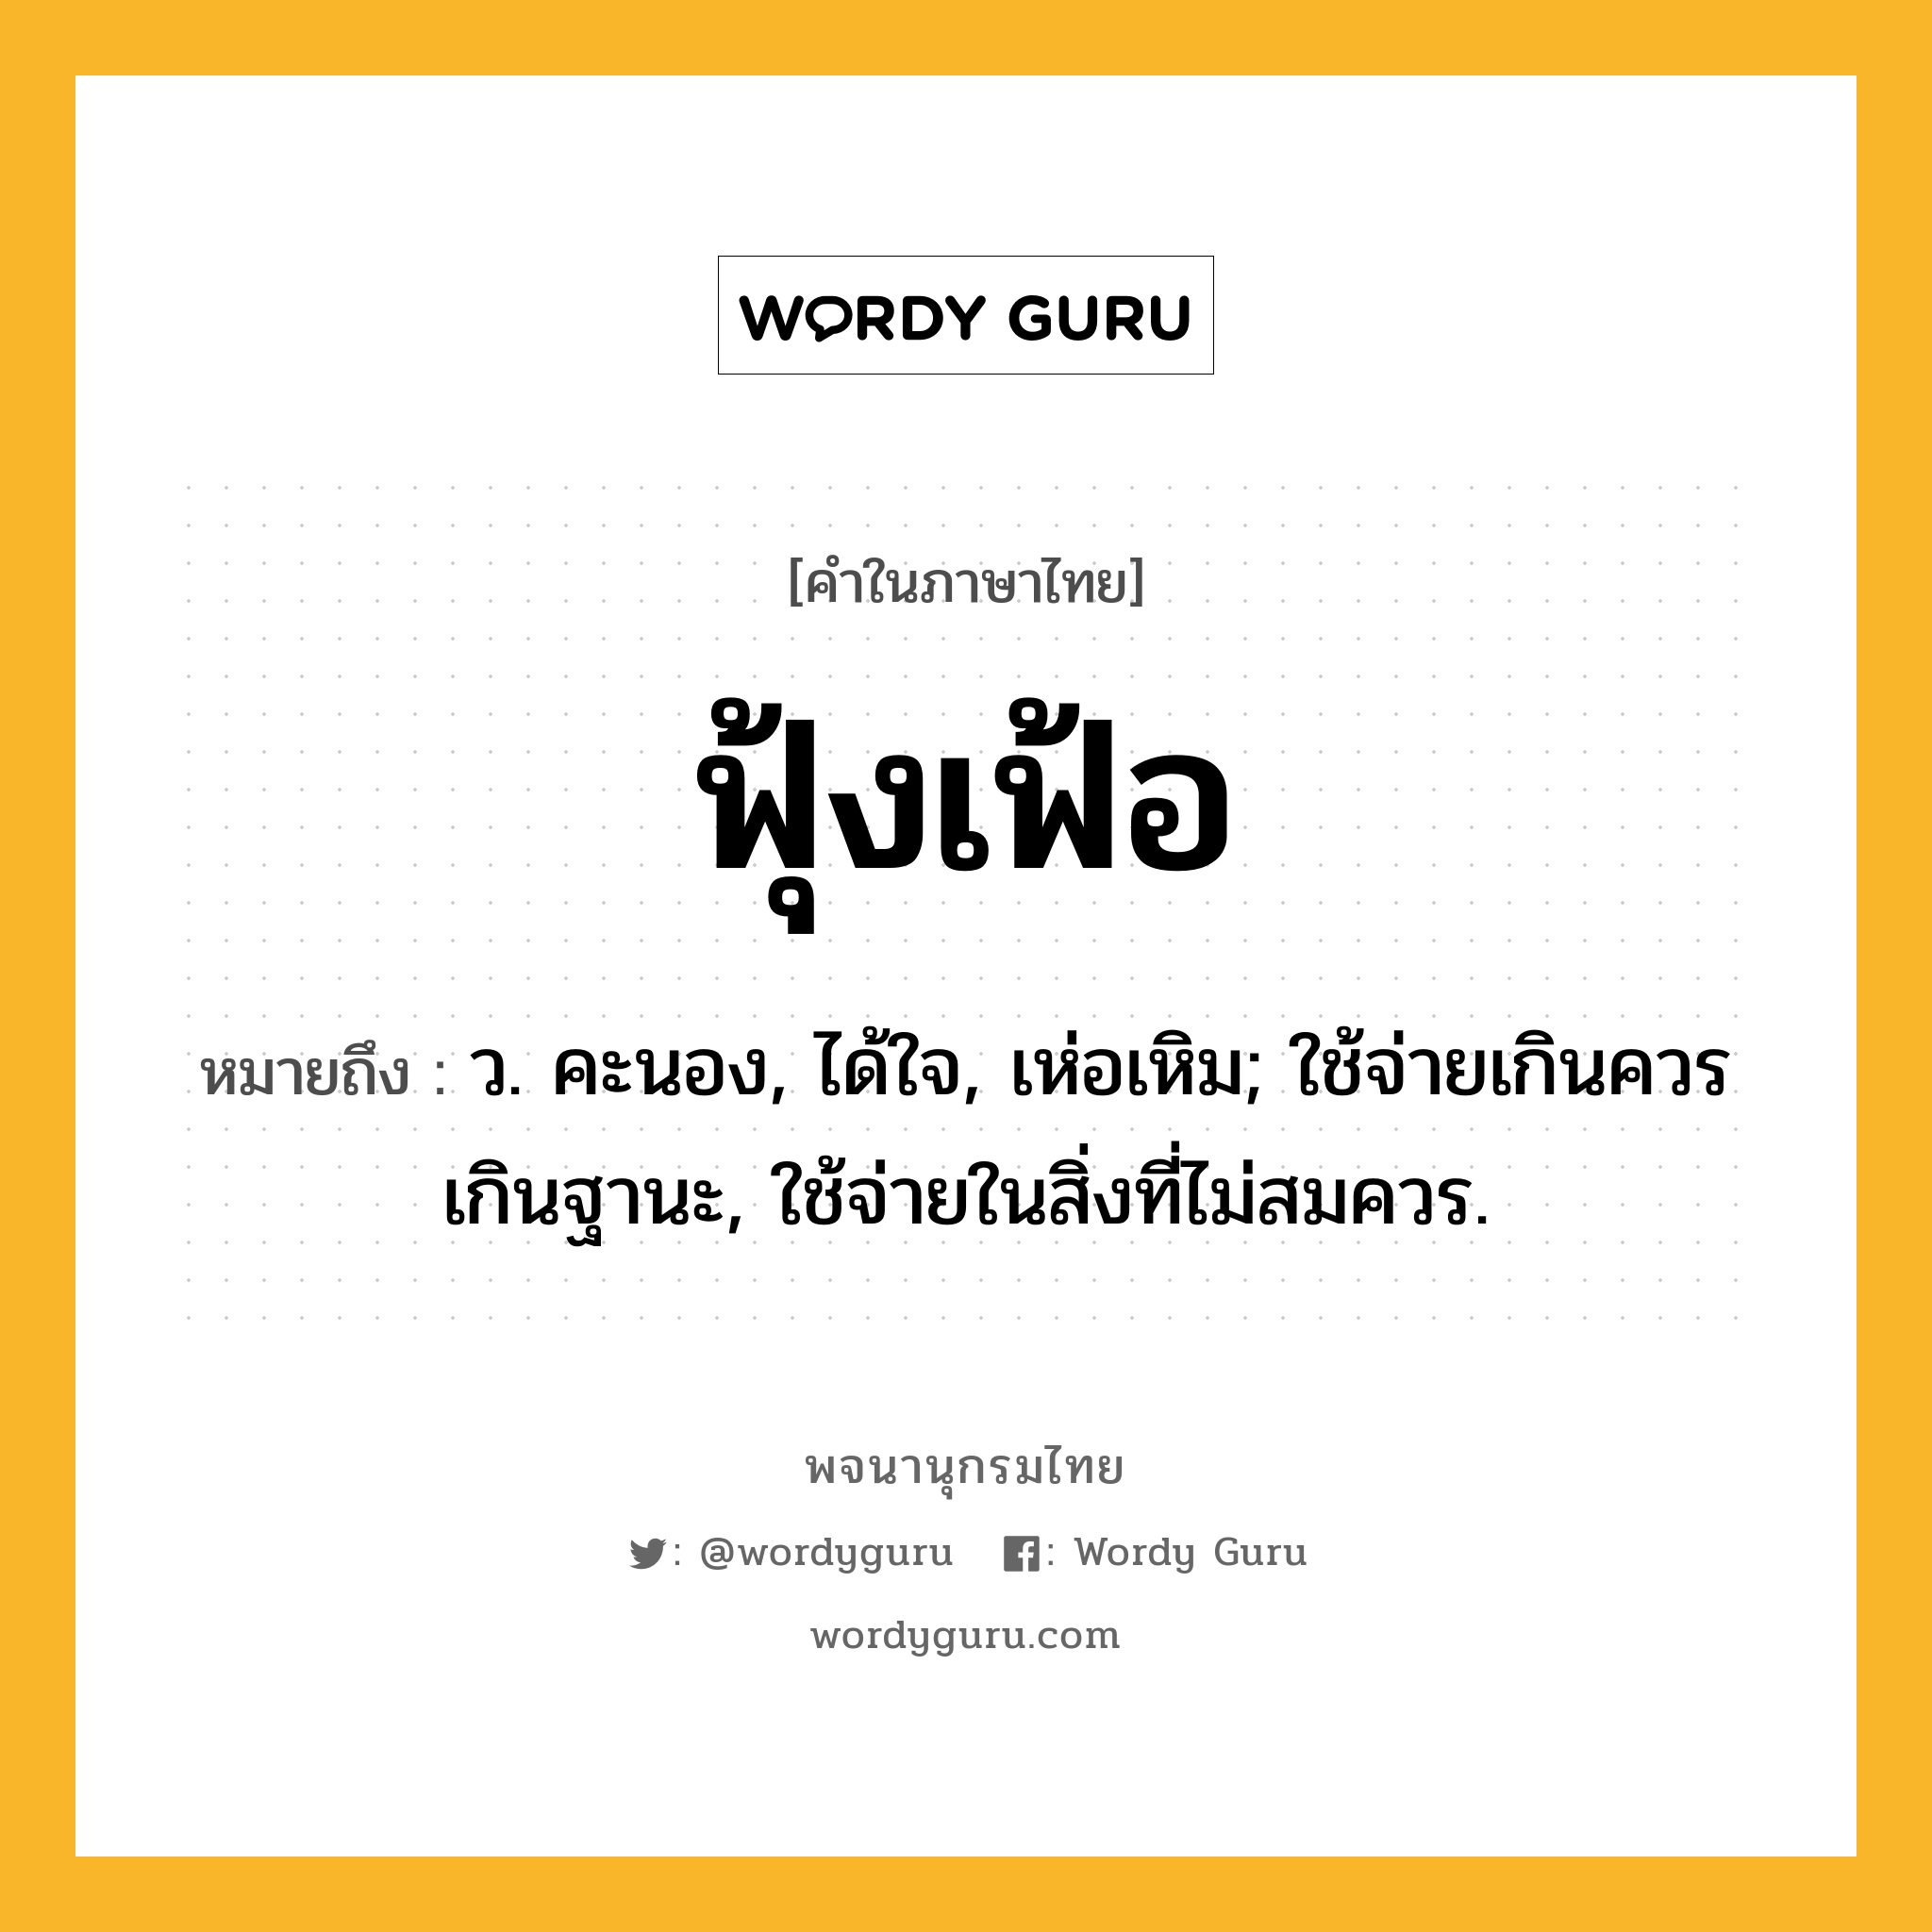 ฟุ้งเฟ้อ ความหมาย หมายถึงอะไร?, คำในภาษาไทย ฟุ้งเฟ้อ หมายถึง ว. คะนอง, ได้ใจ, เห่อเหิม; ใช้จ่ายเกินควรเกินฐานะ, ใช้จ่ายในสิ่งที่ไม่สมควร.